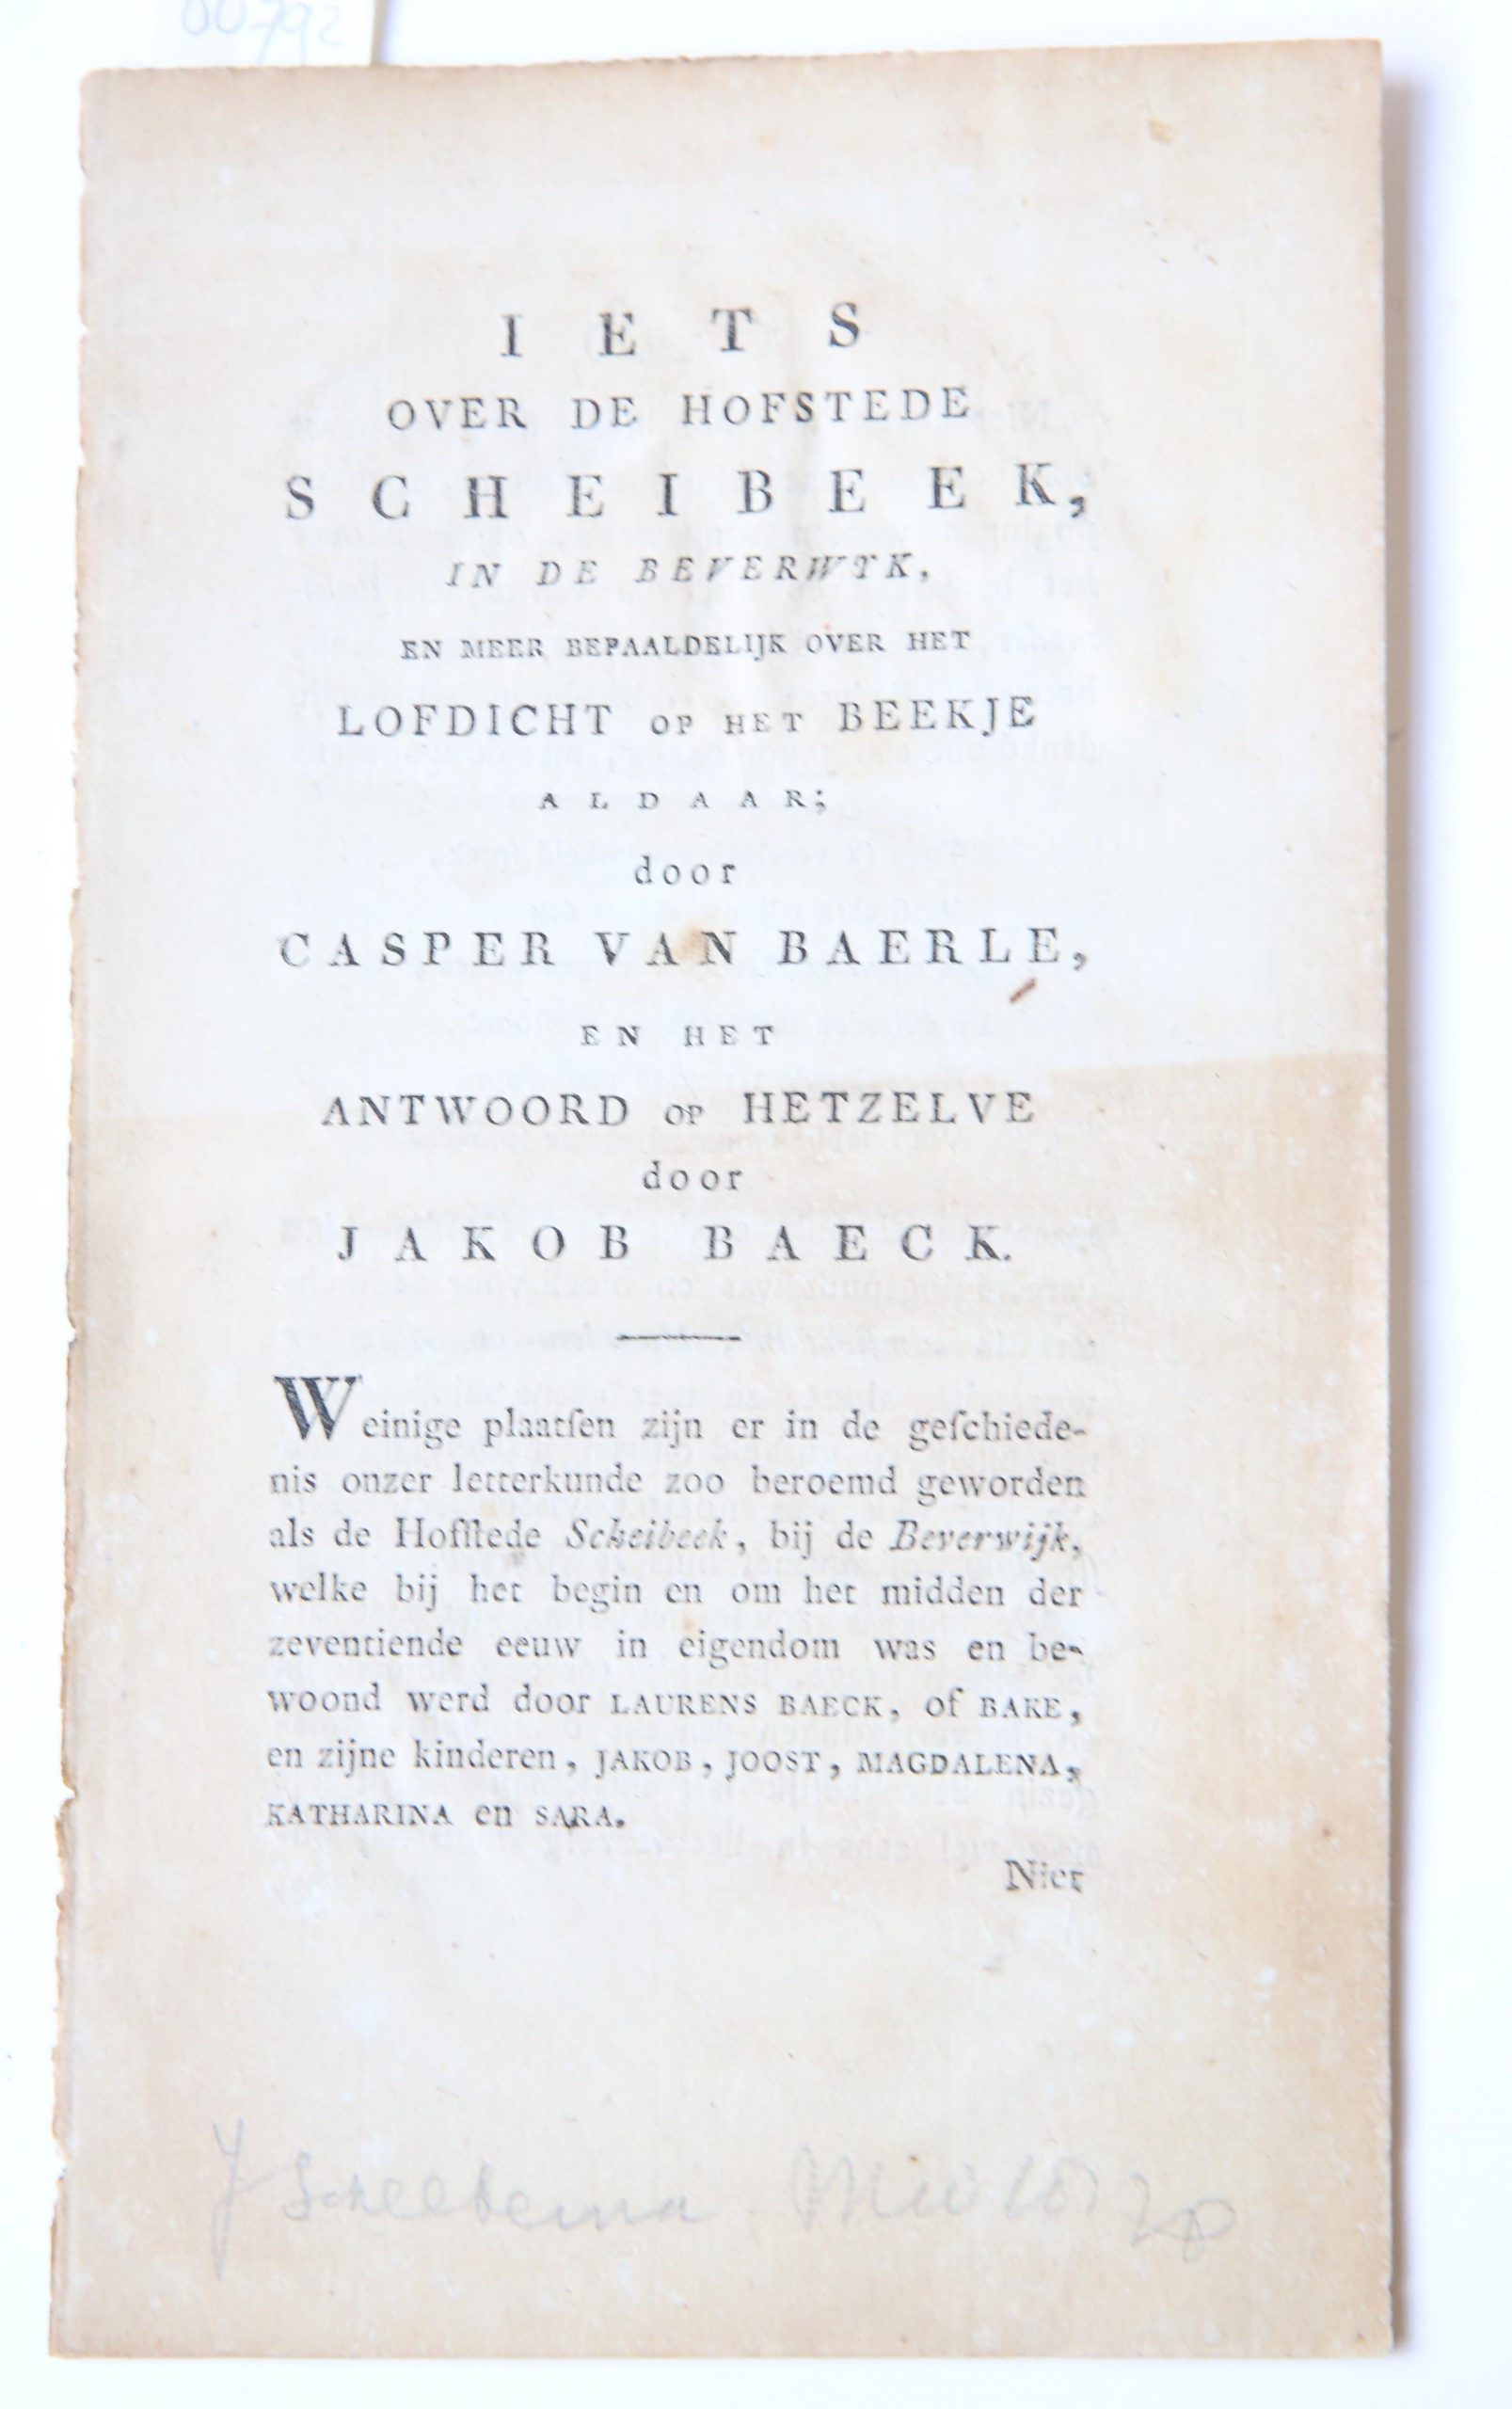 Iets over de hofstede Scheibeek in de Beverwijk en meer bepaaldelijk over het lofdicht op het beekje aldaar door Casper van Baerle en het antwoord op hetzelve door Jakob Baeck, p. 237-248.